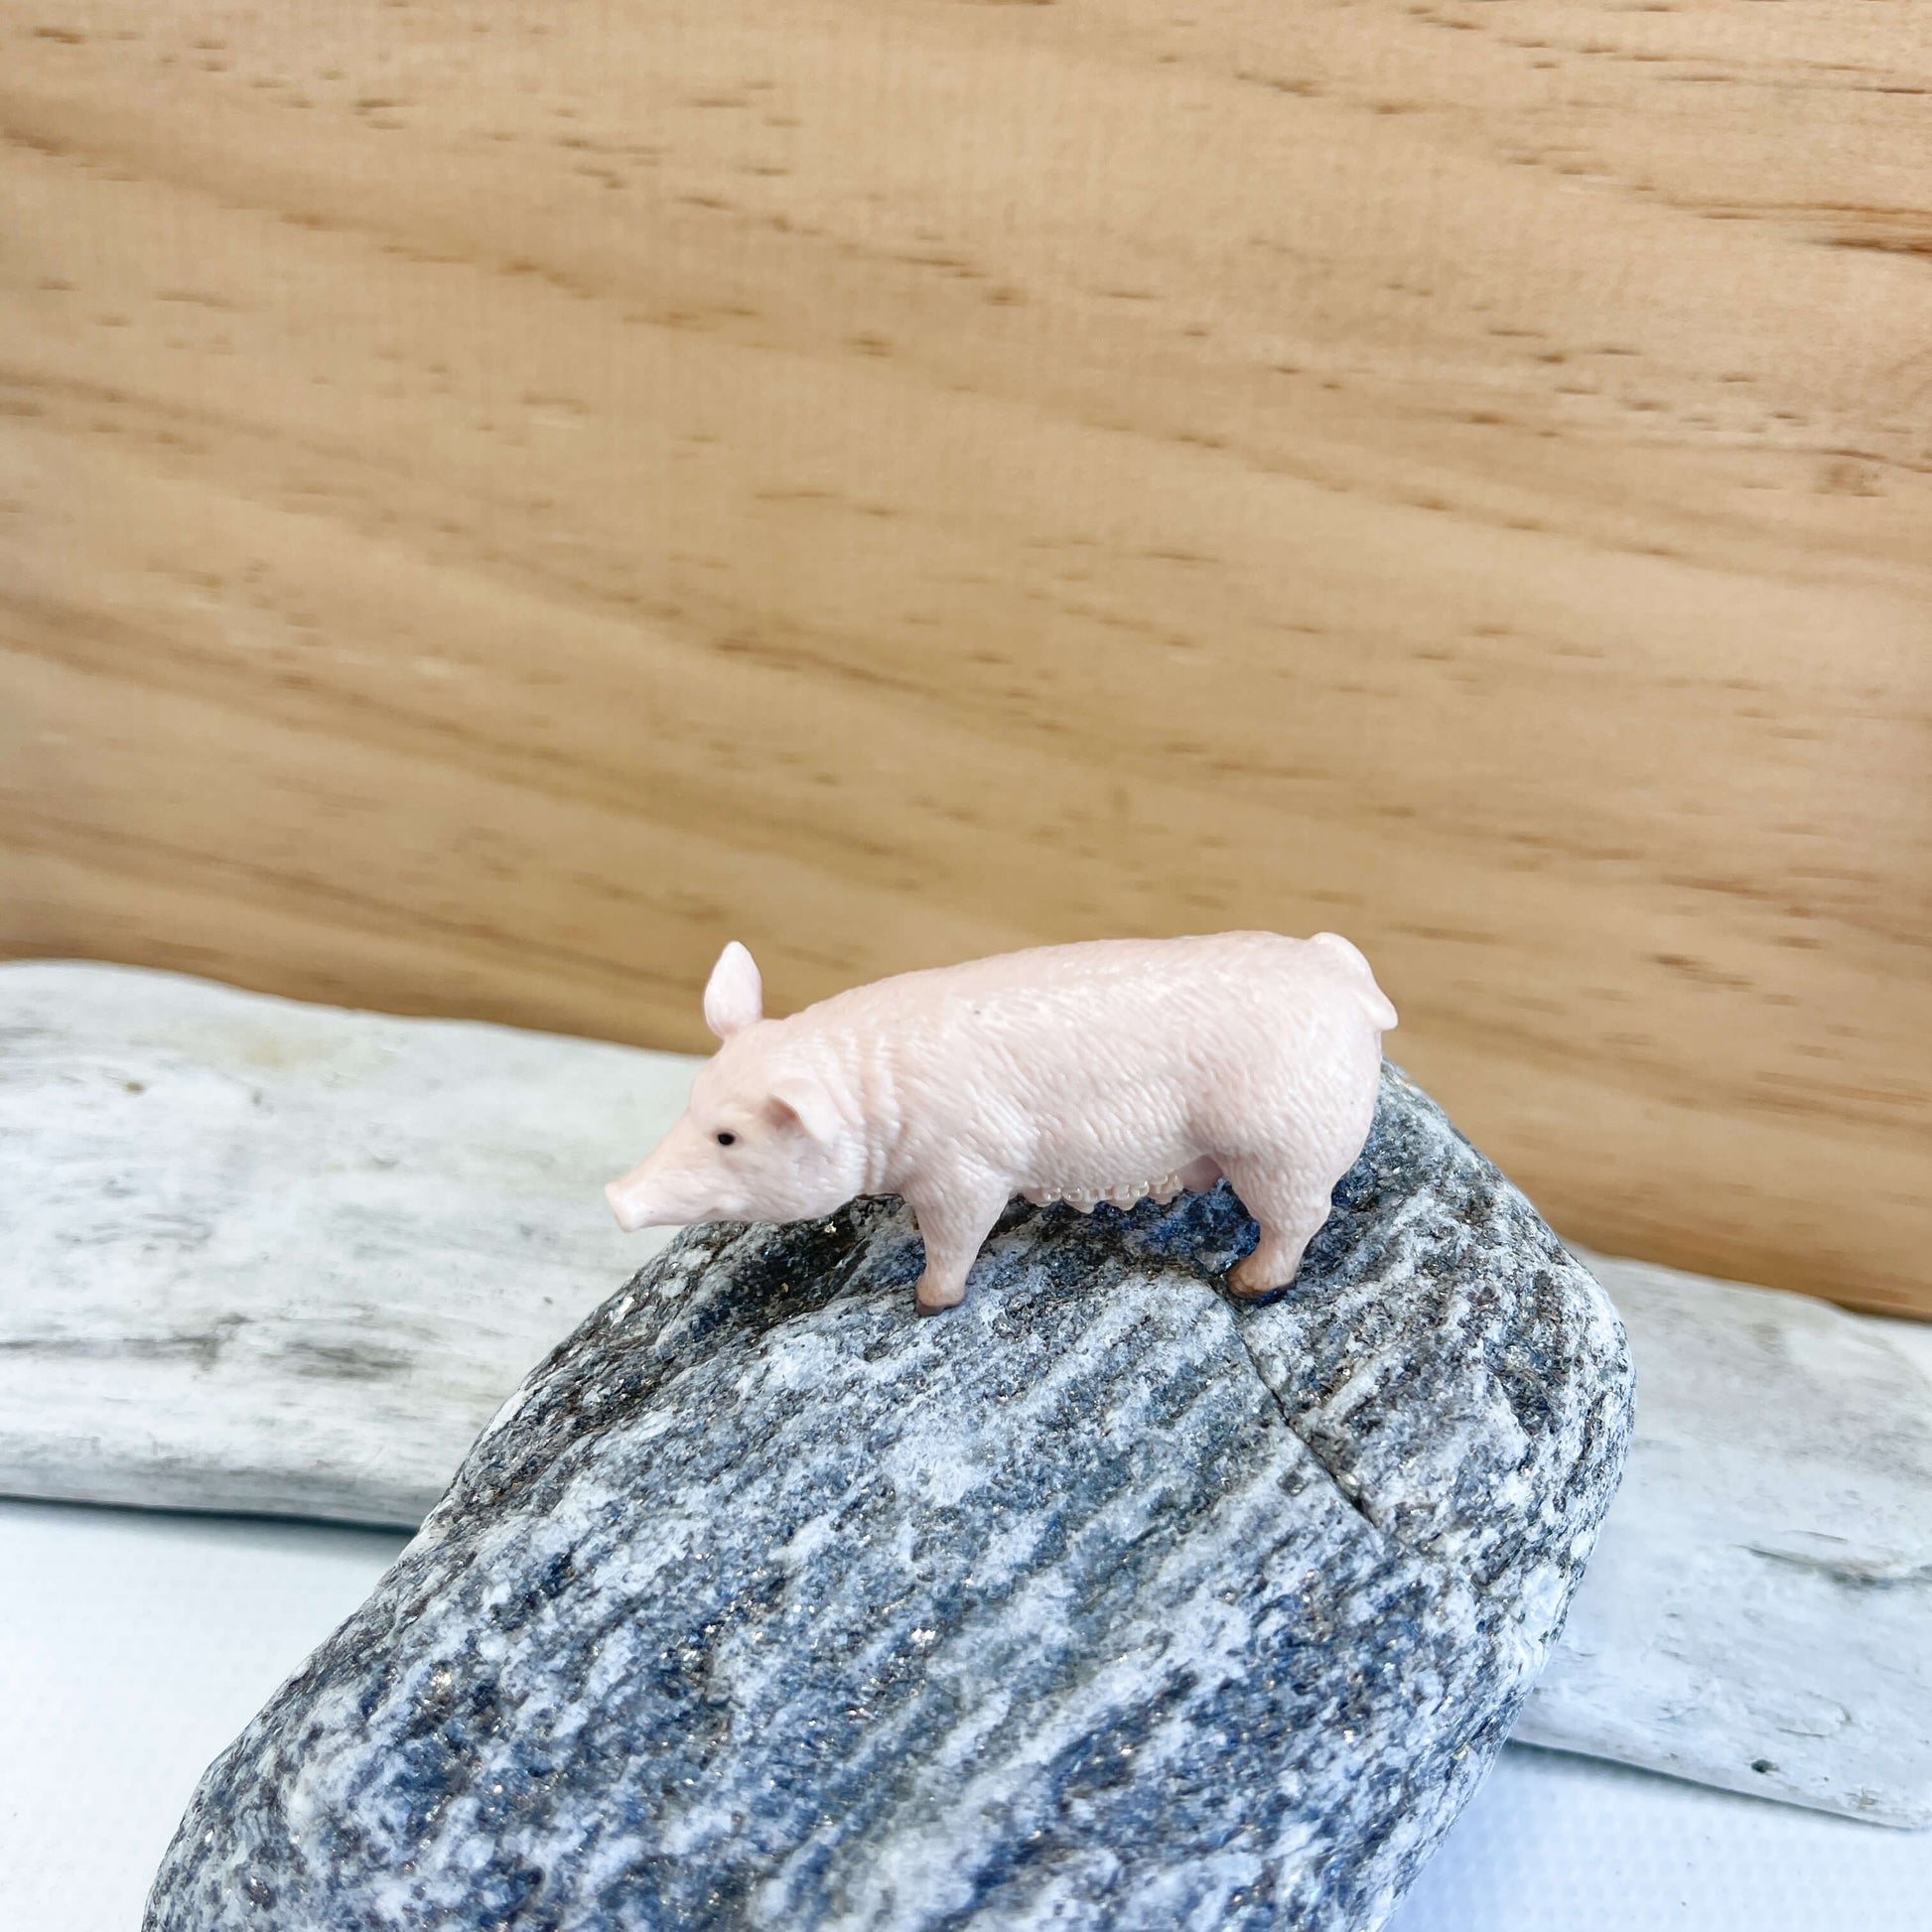 Mini pig figurine.